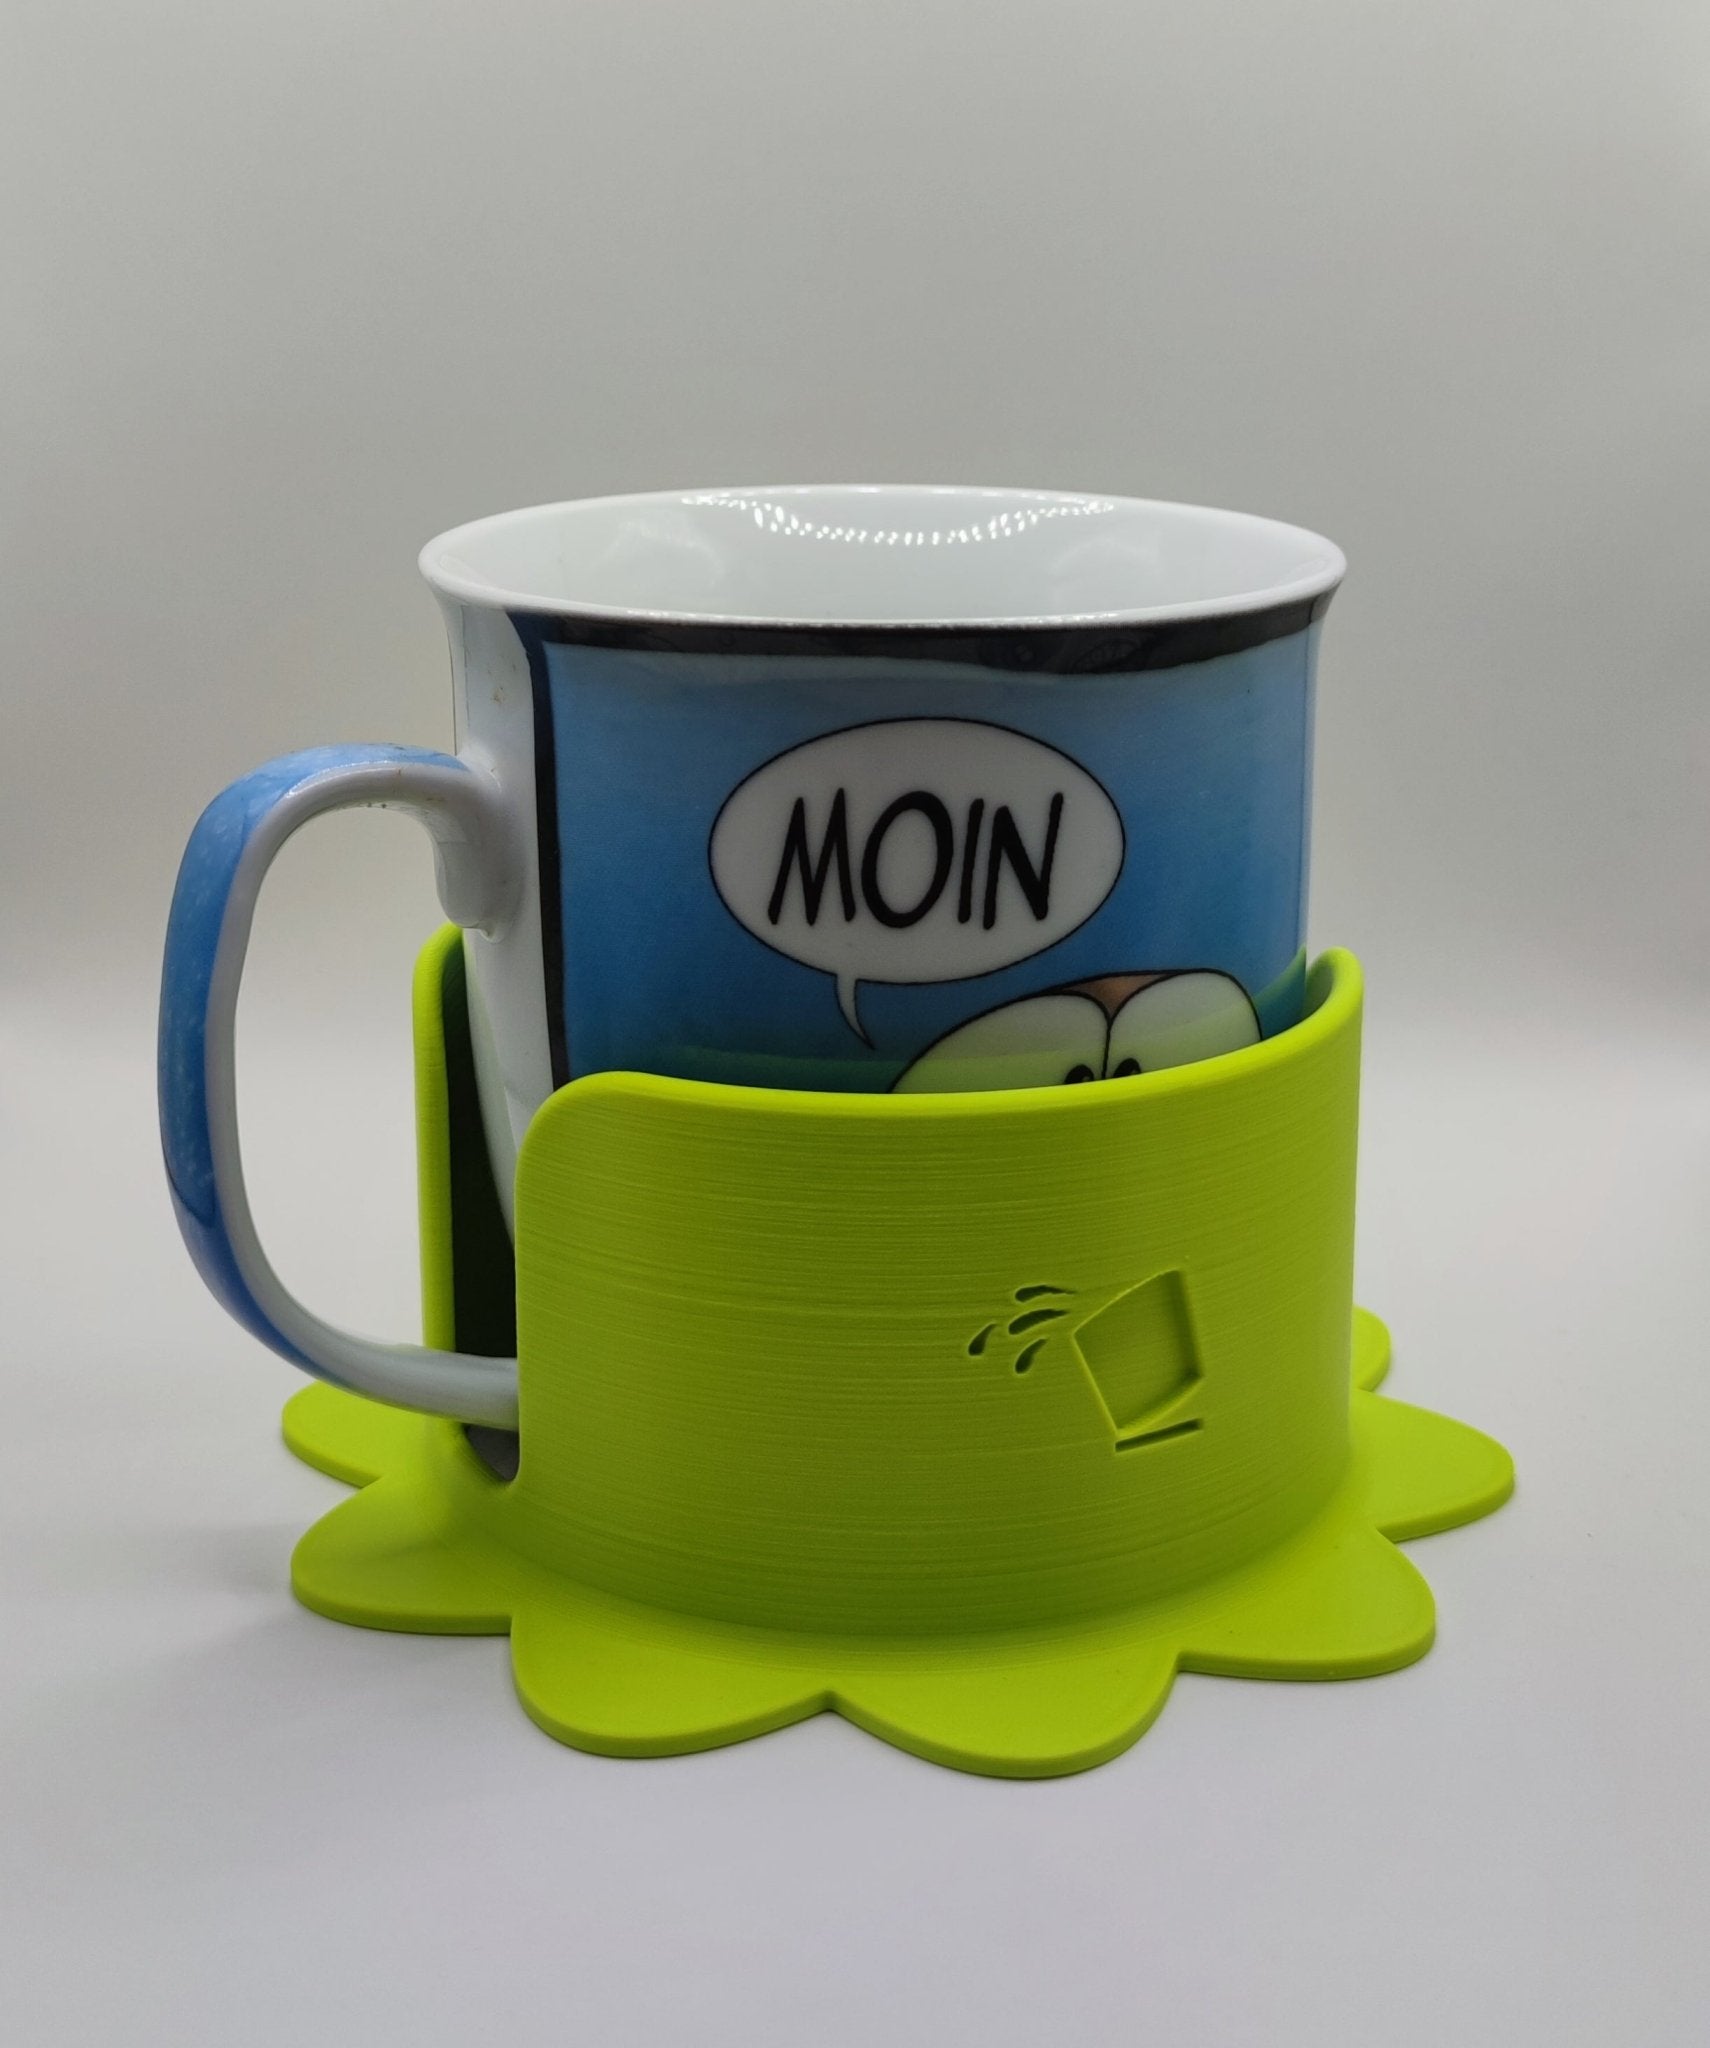 Getränkehalterung für Kaffeetasse oder Teetasse mit 10 cm Durchmesser - Überschwapp